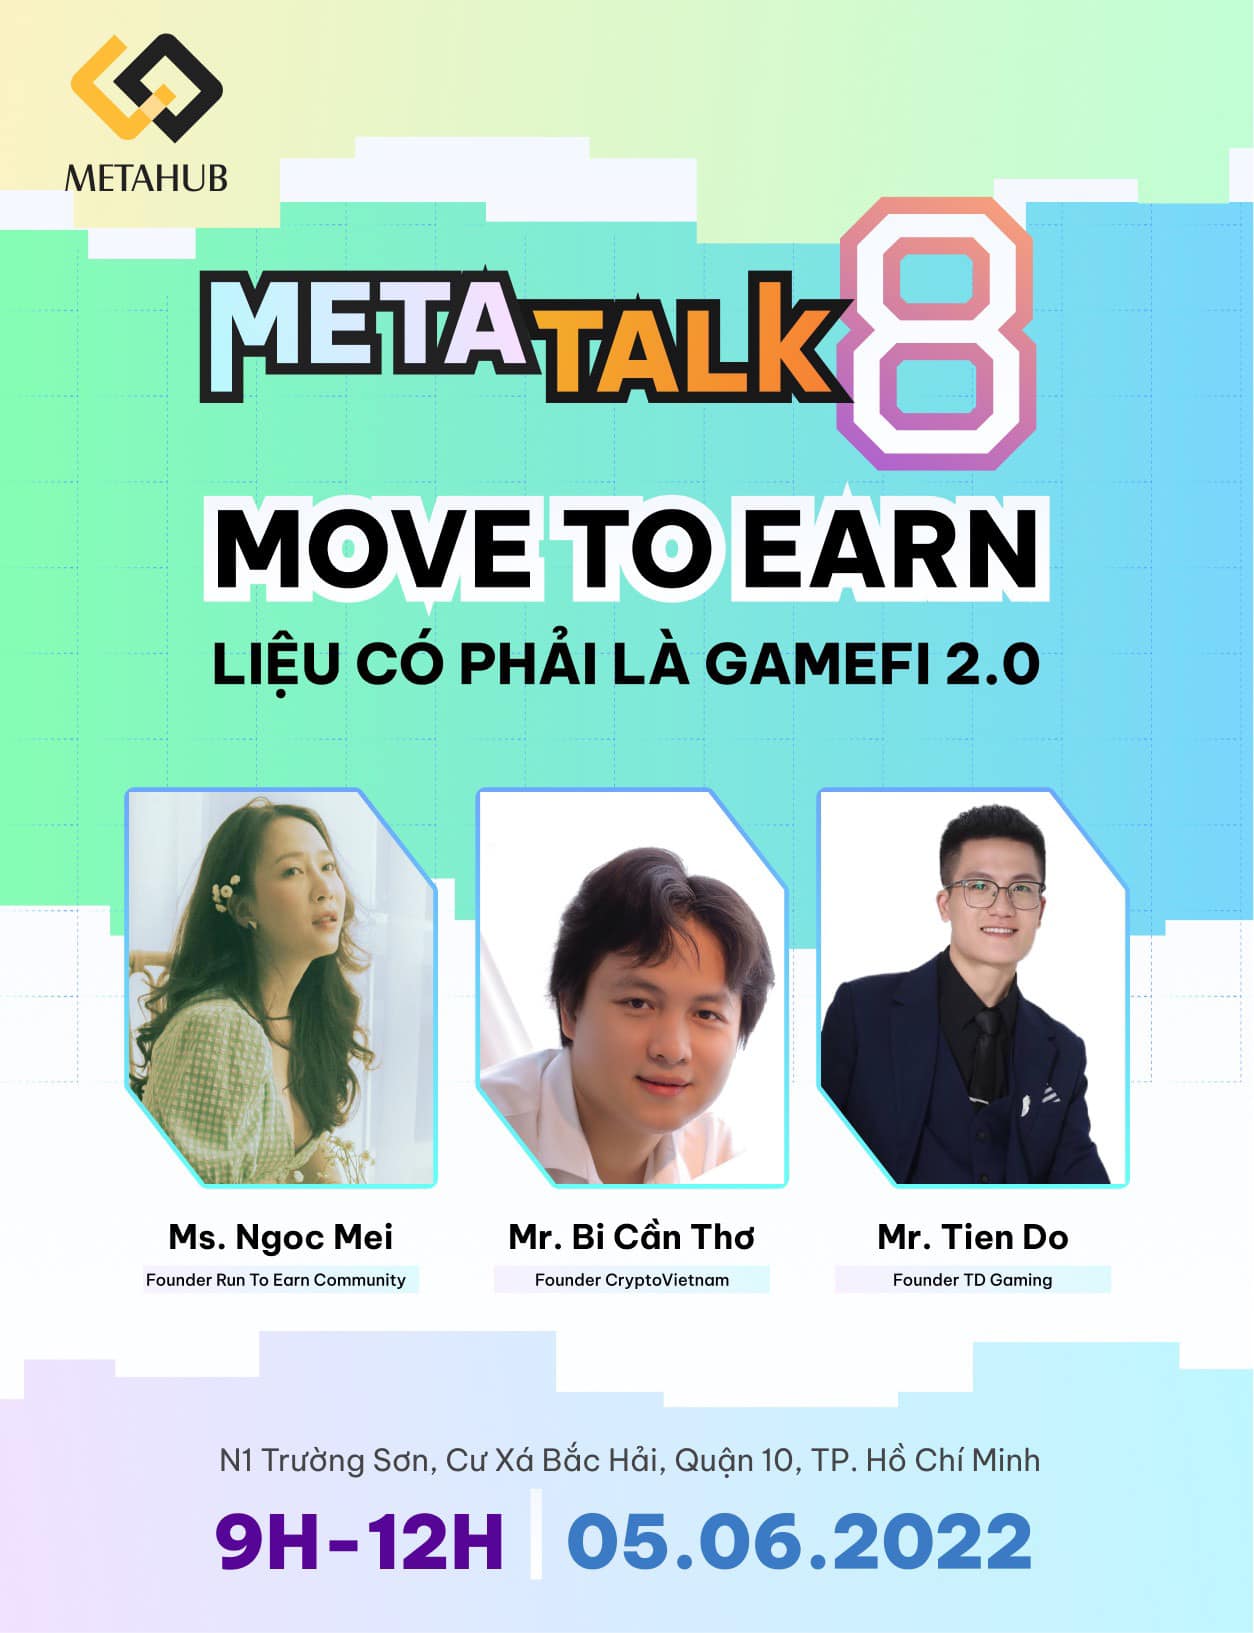 Recap Metatalk 8: Move To Earn liệu có phải làm GameFi 2.0?